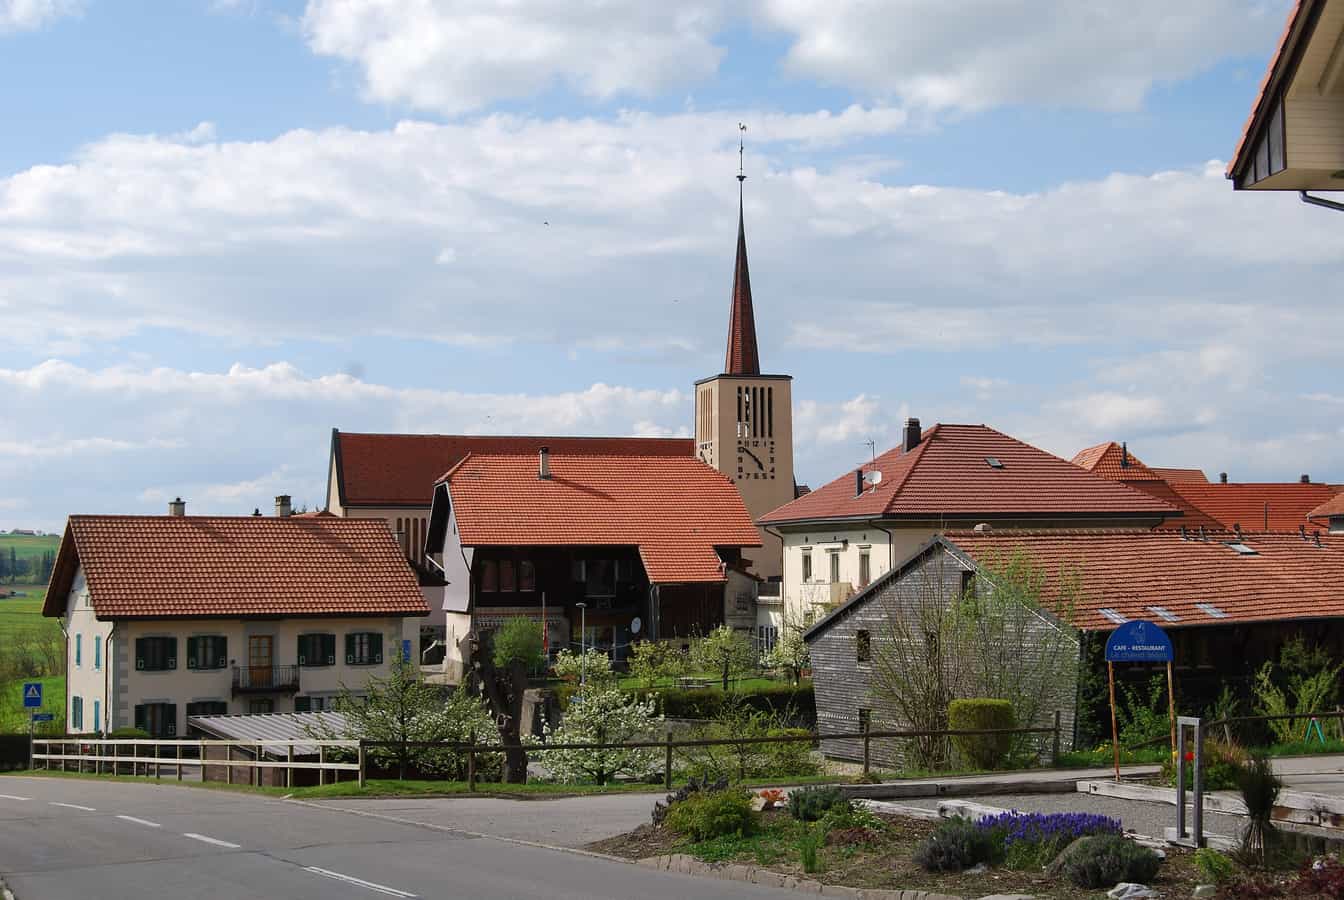 Orsonnens, commune de Villorsonnens, canton de Fribourg, Suisse